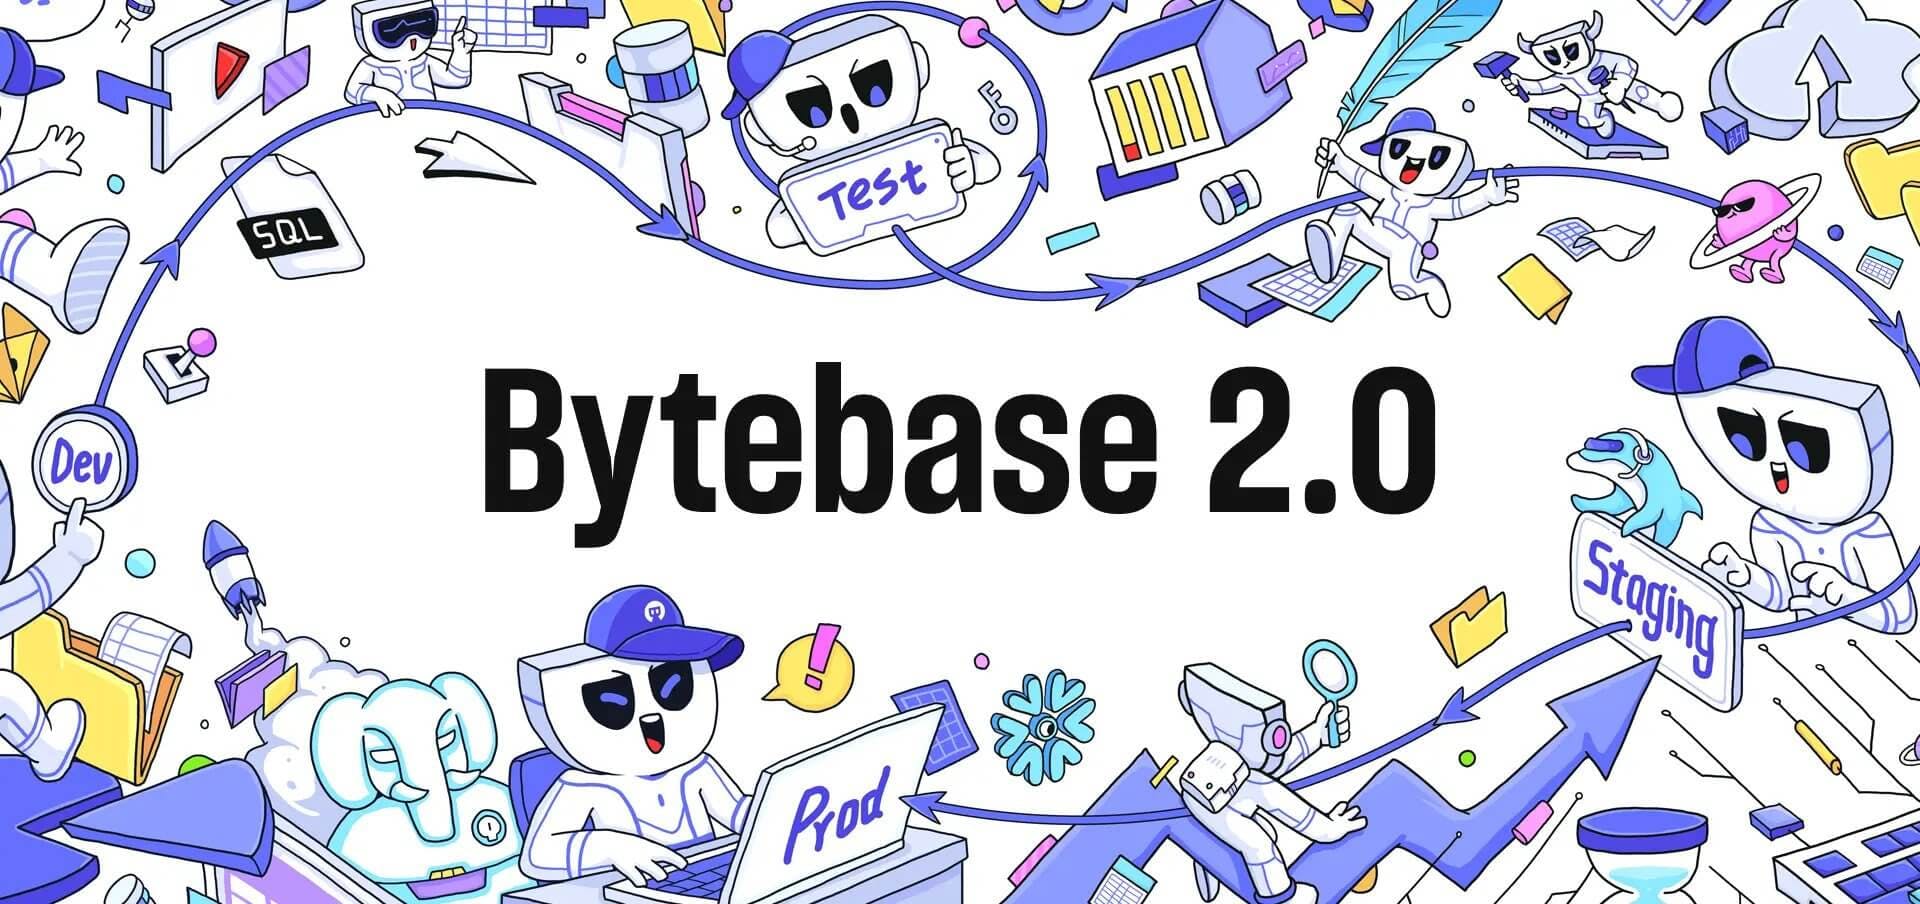 Bytebase 2.0 - the GitLab for Database DevOps